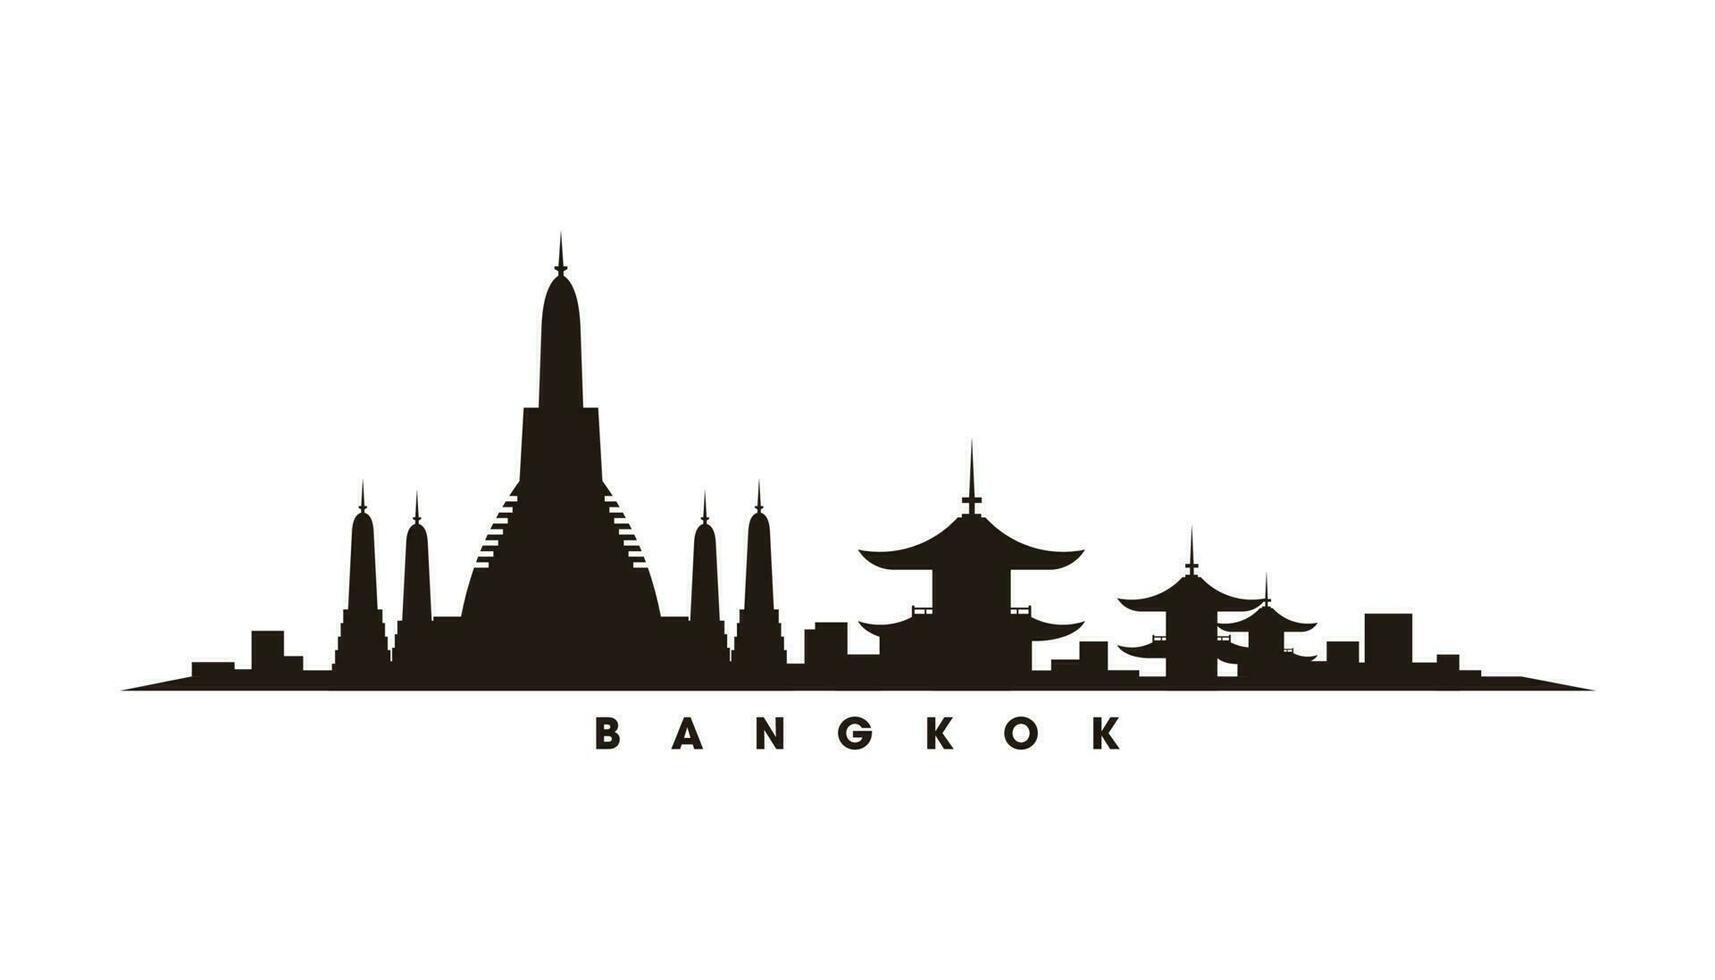 Bangkok skyline and landmarks silhouette vector